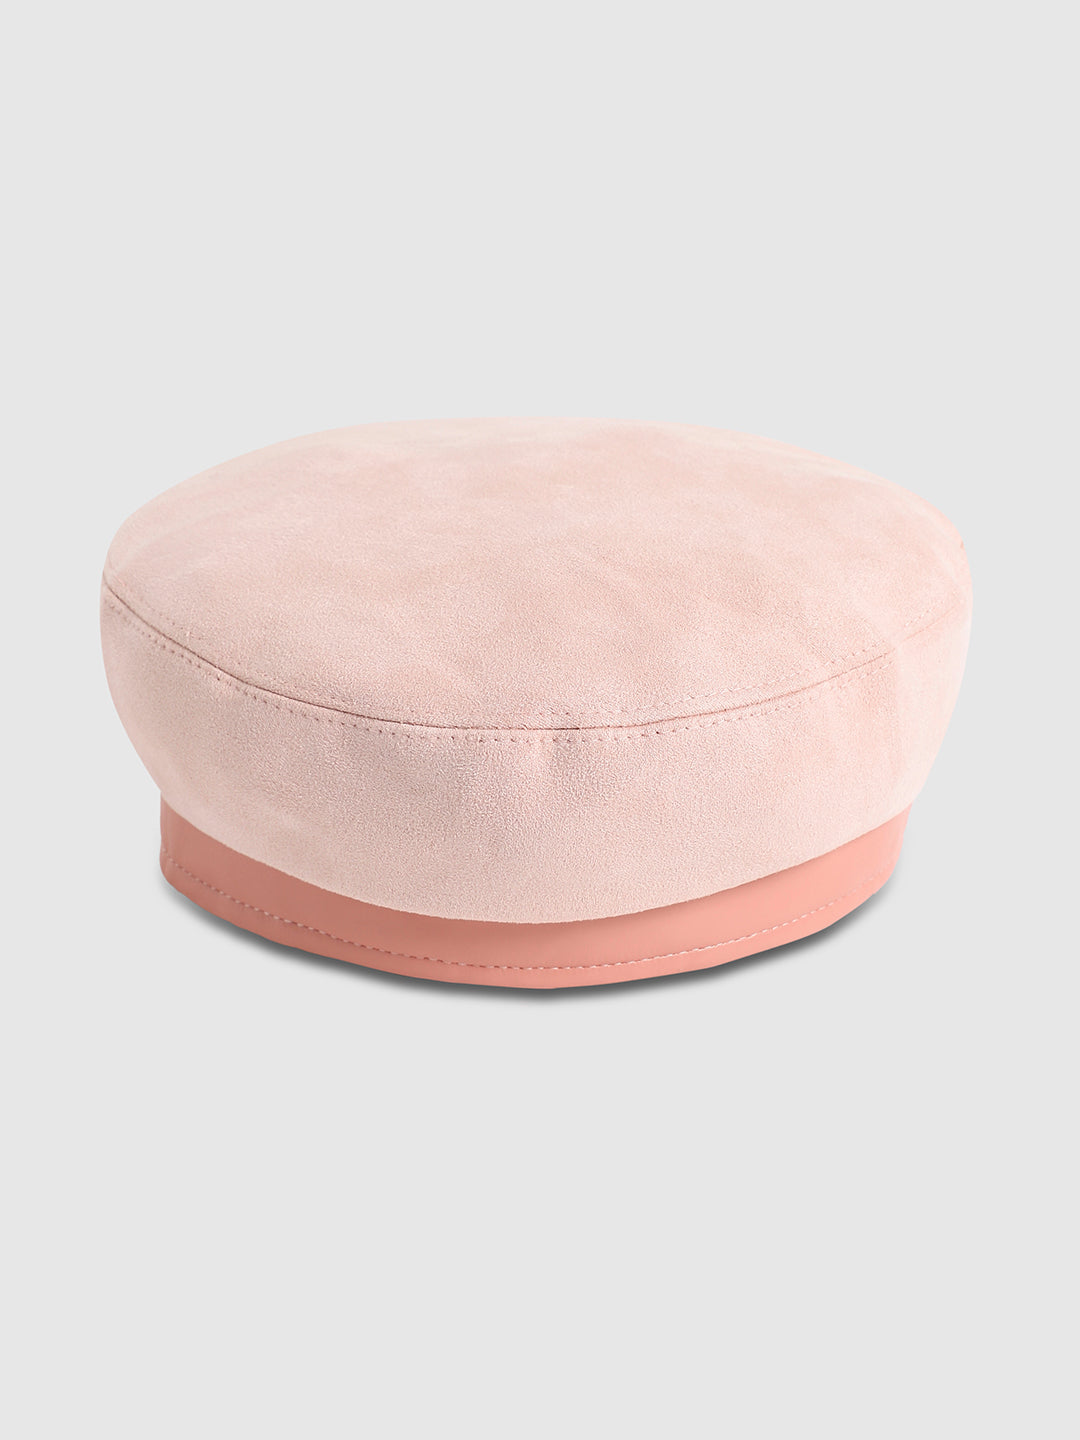 Contrast Texture Beret Hat - Baby Pink